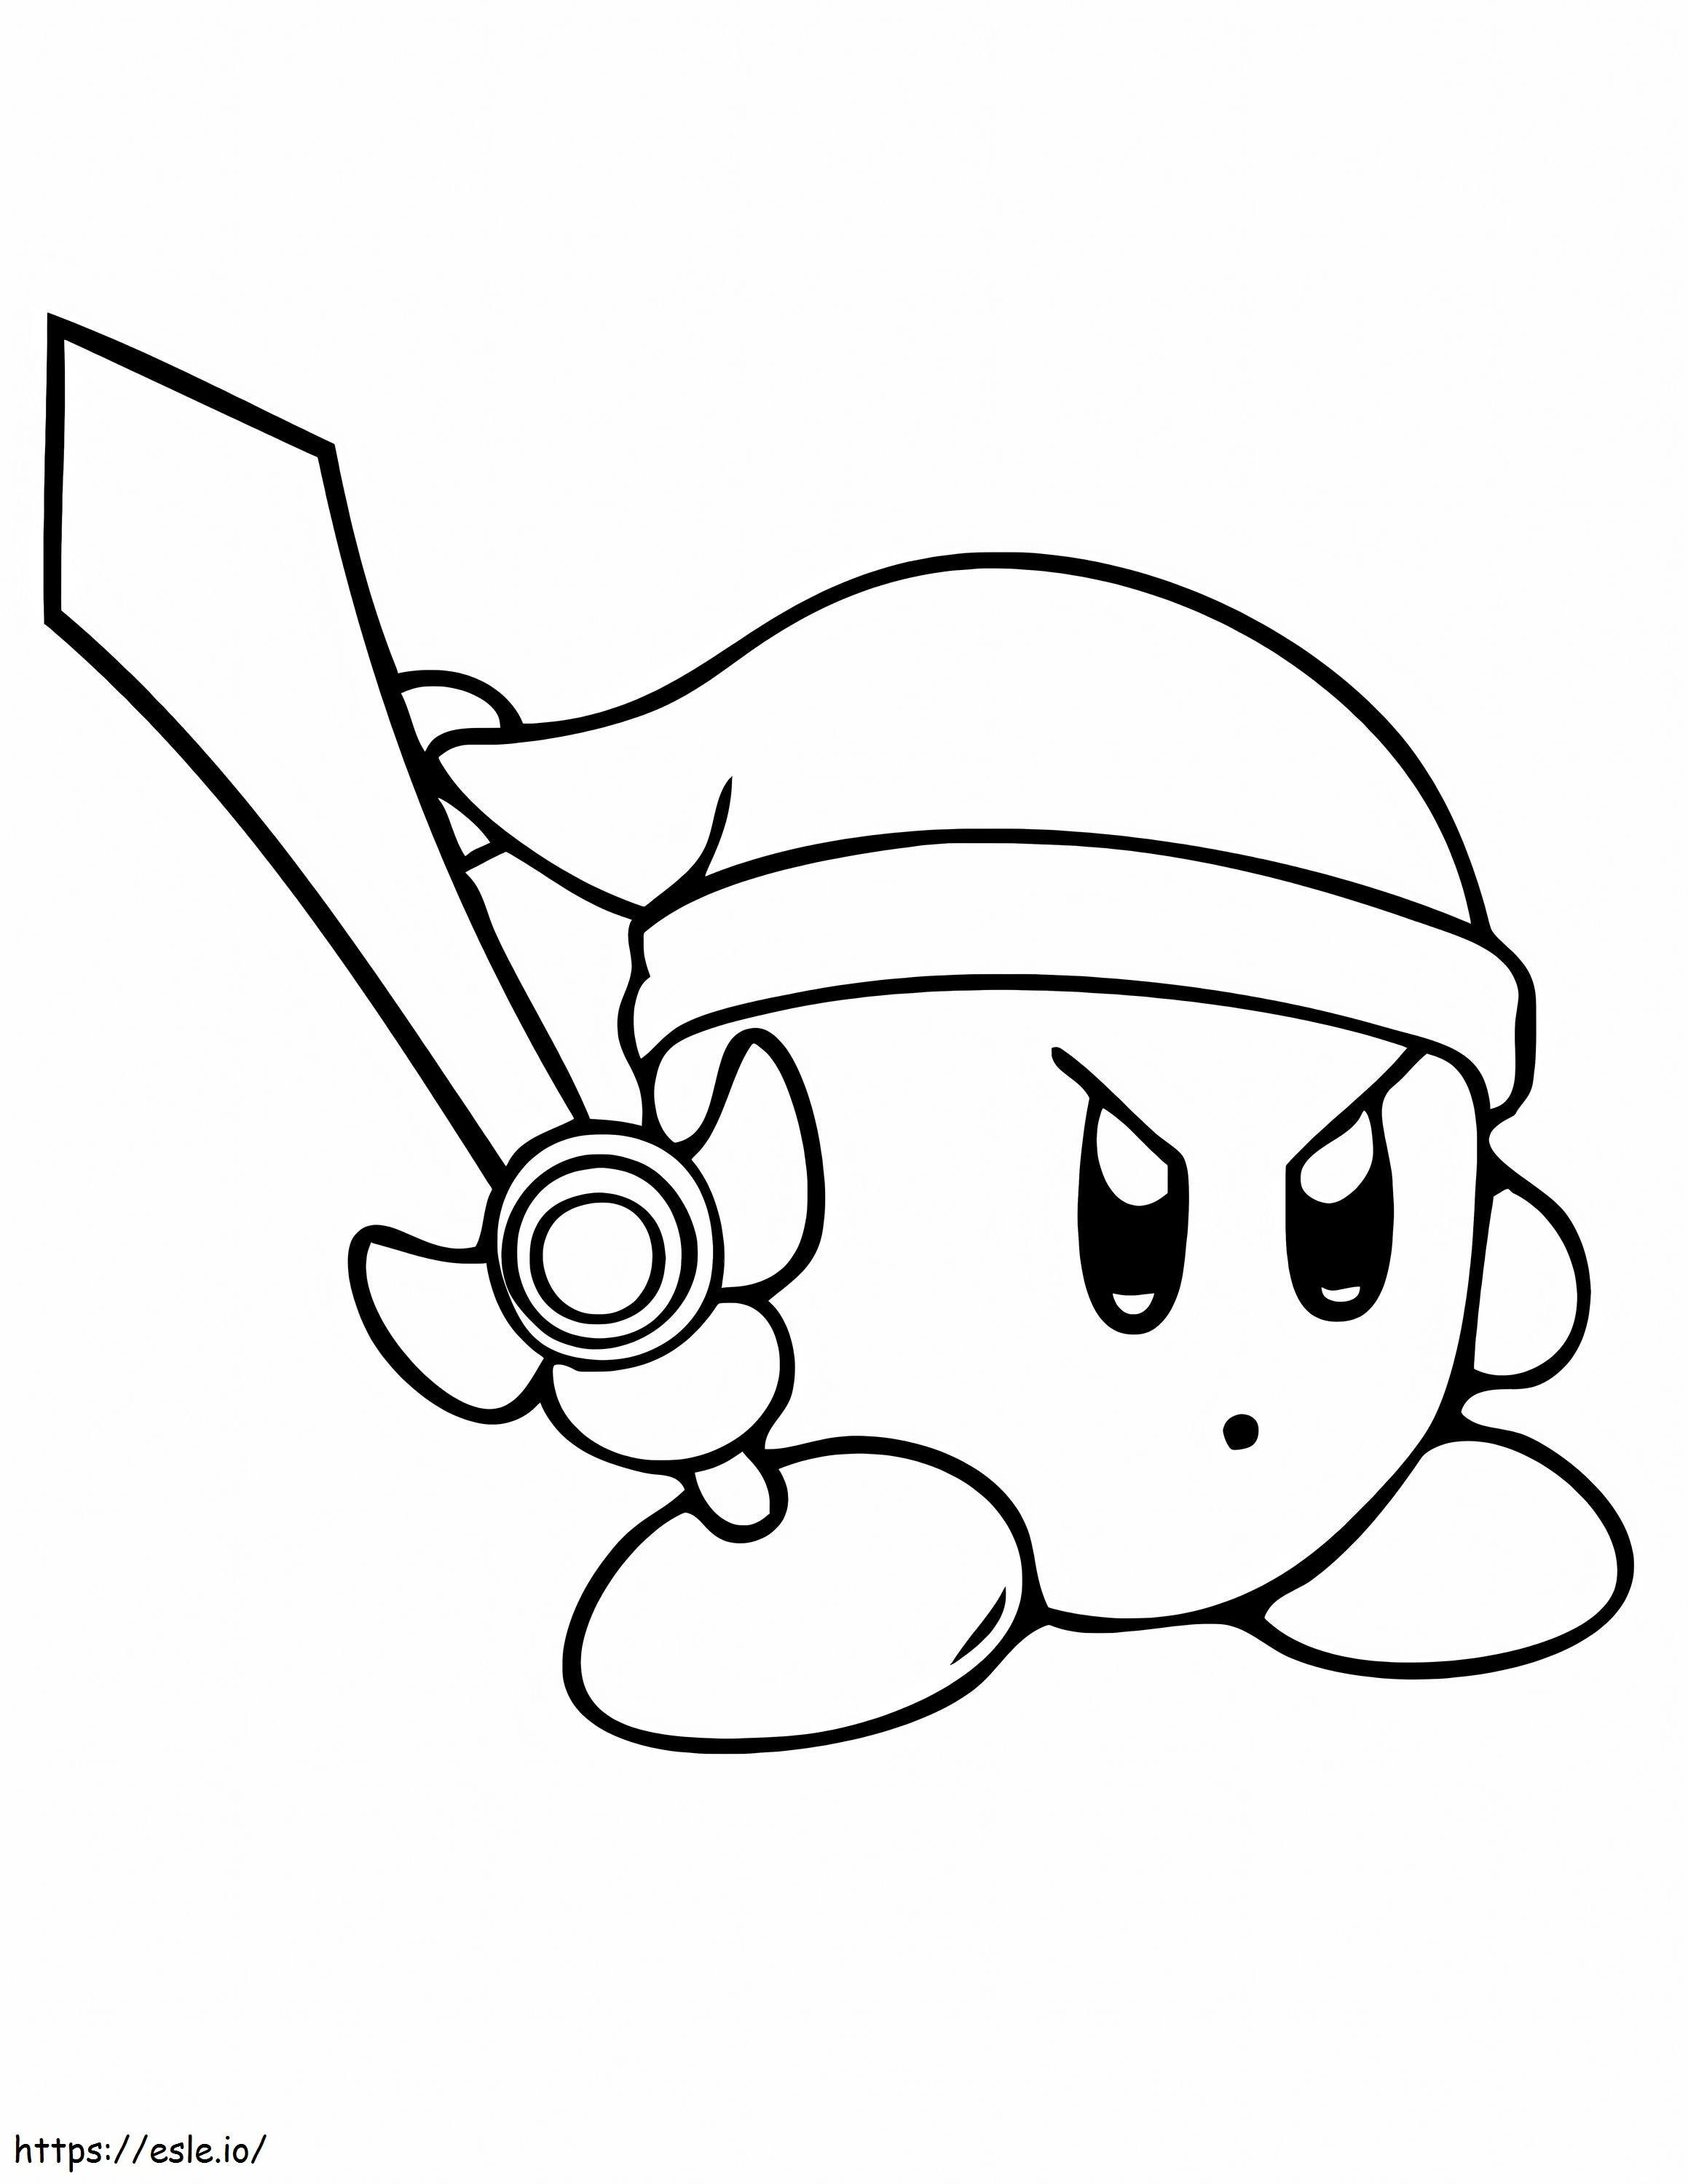 Kirby ținând sabia de colorat